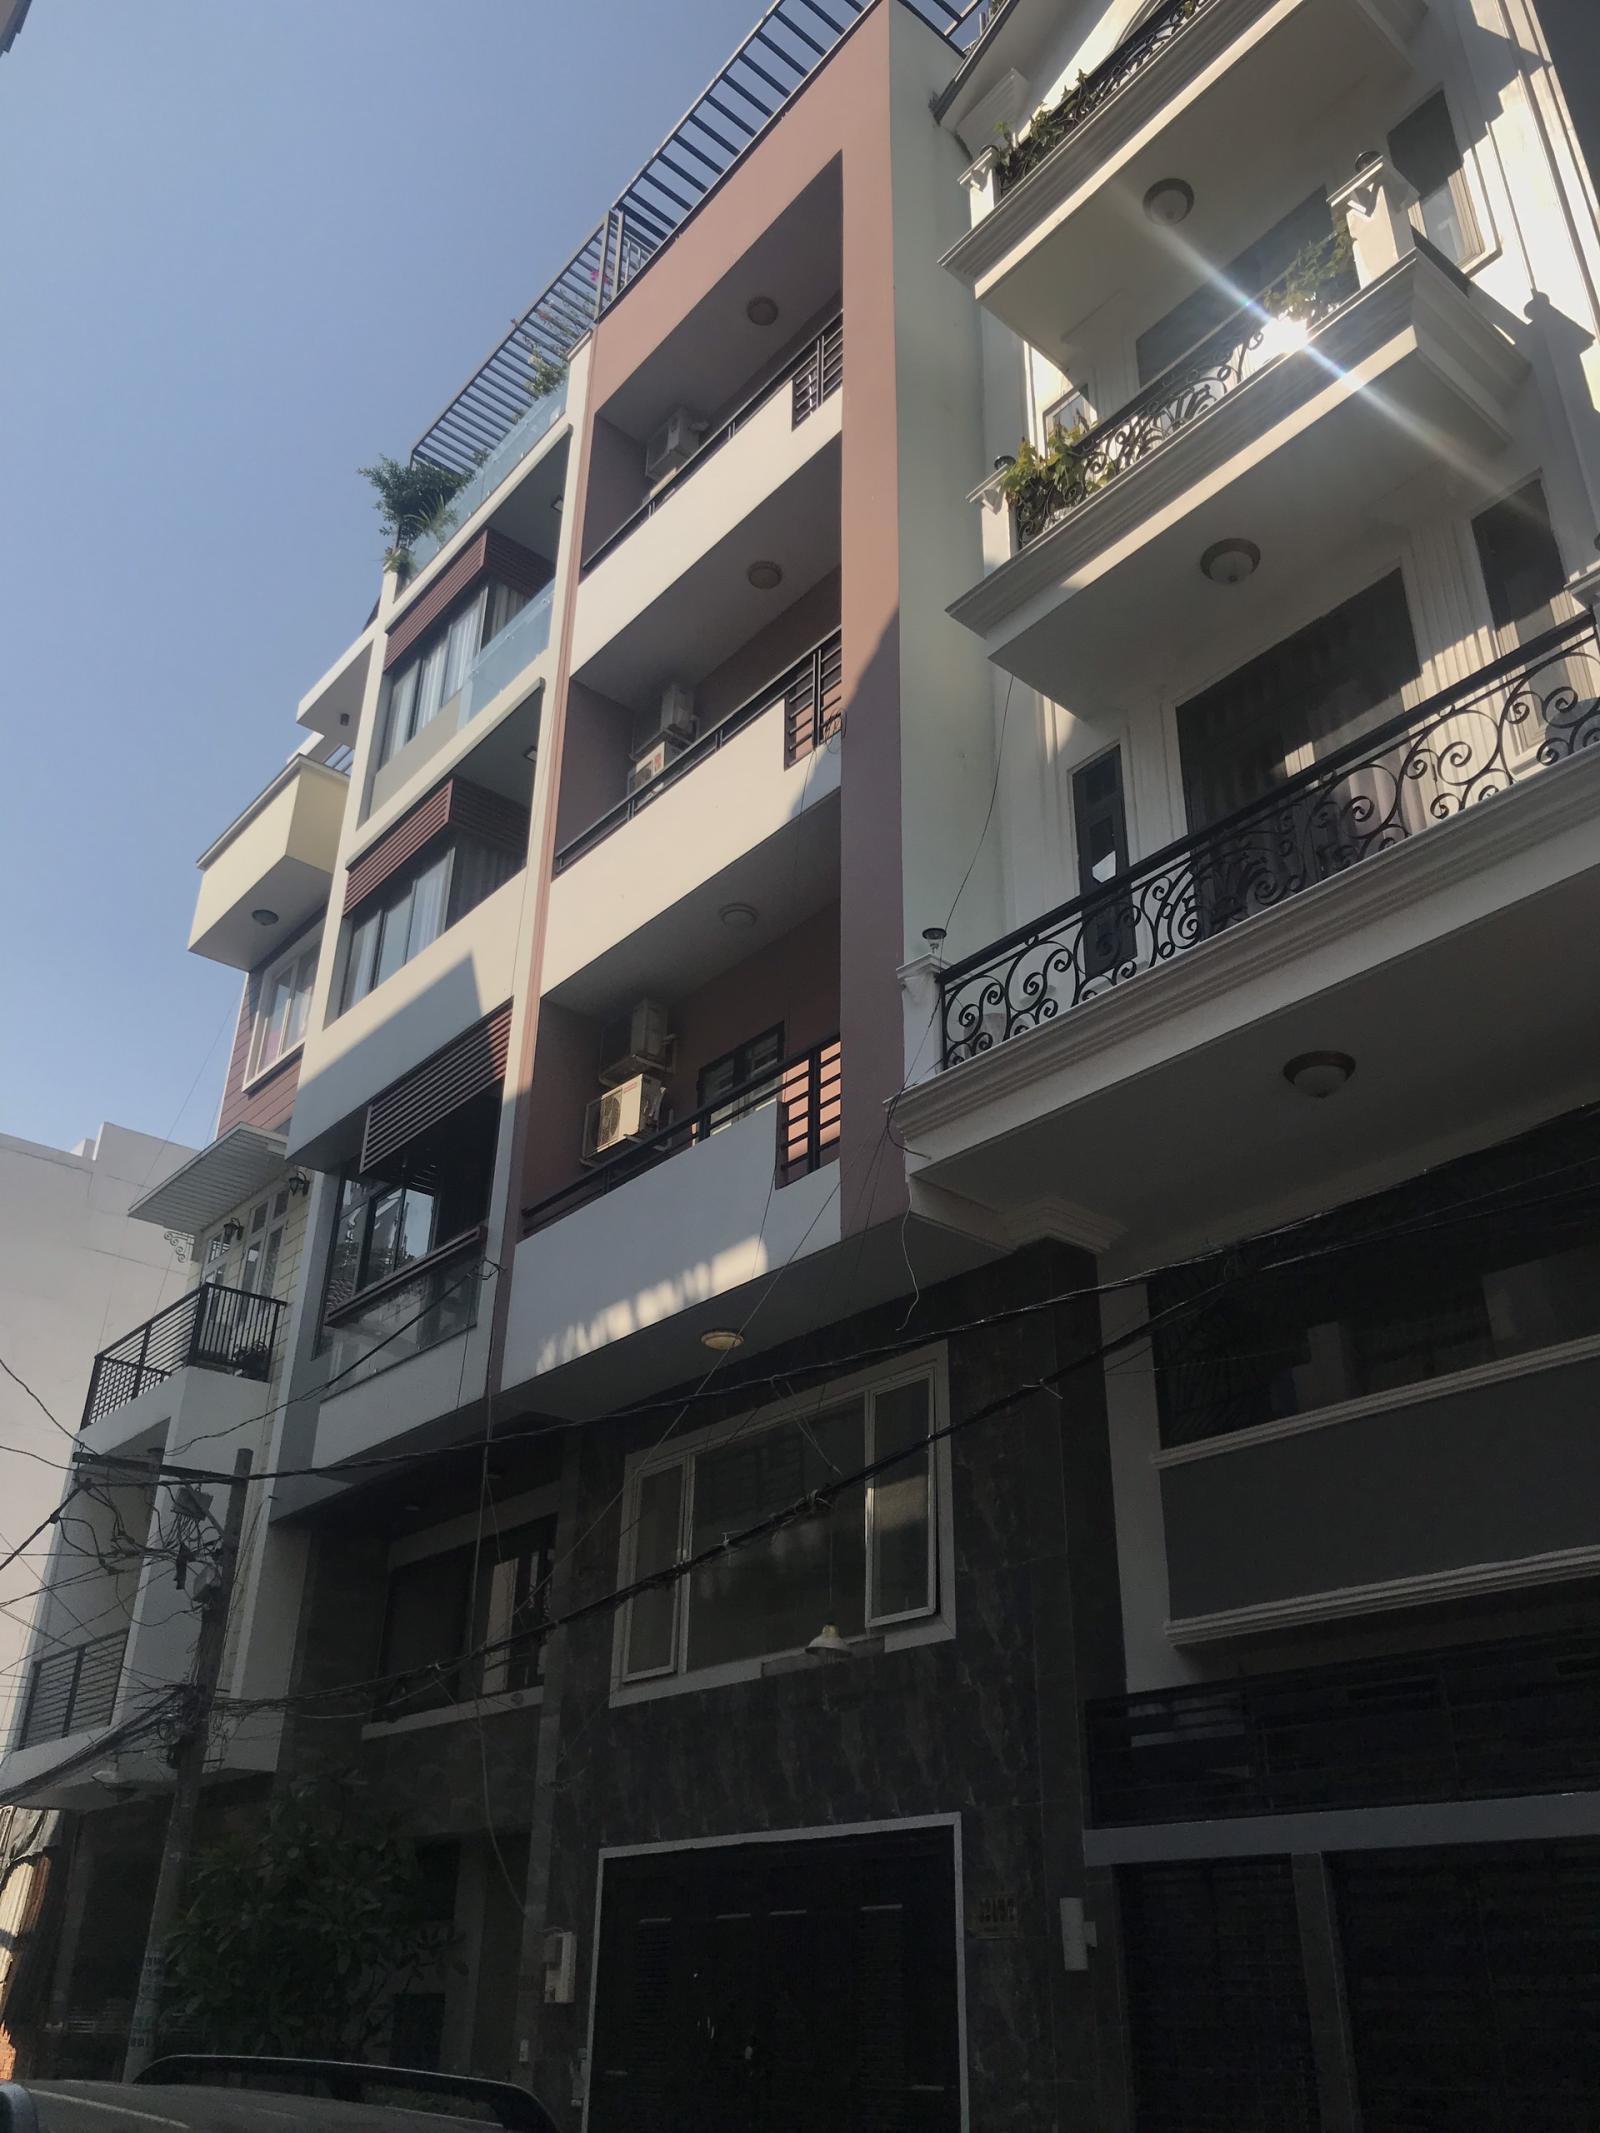 Cần bán căn nhà mặt tiền Tân Hưng ngay bệnh viện Chợ Rẫy Quận 5 (10m x 20m), giá 50 tỷ